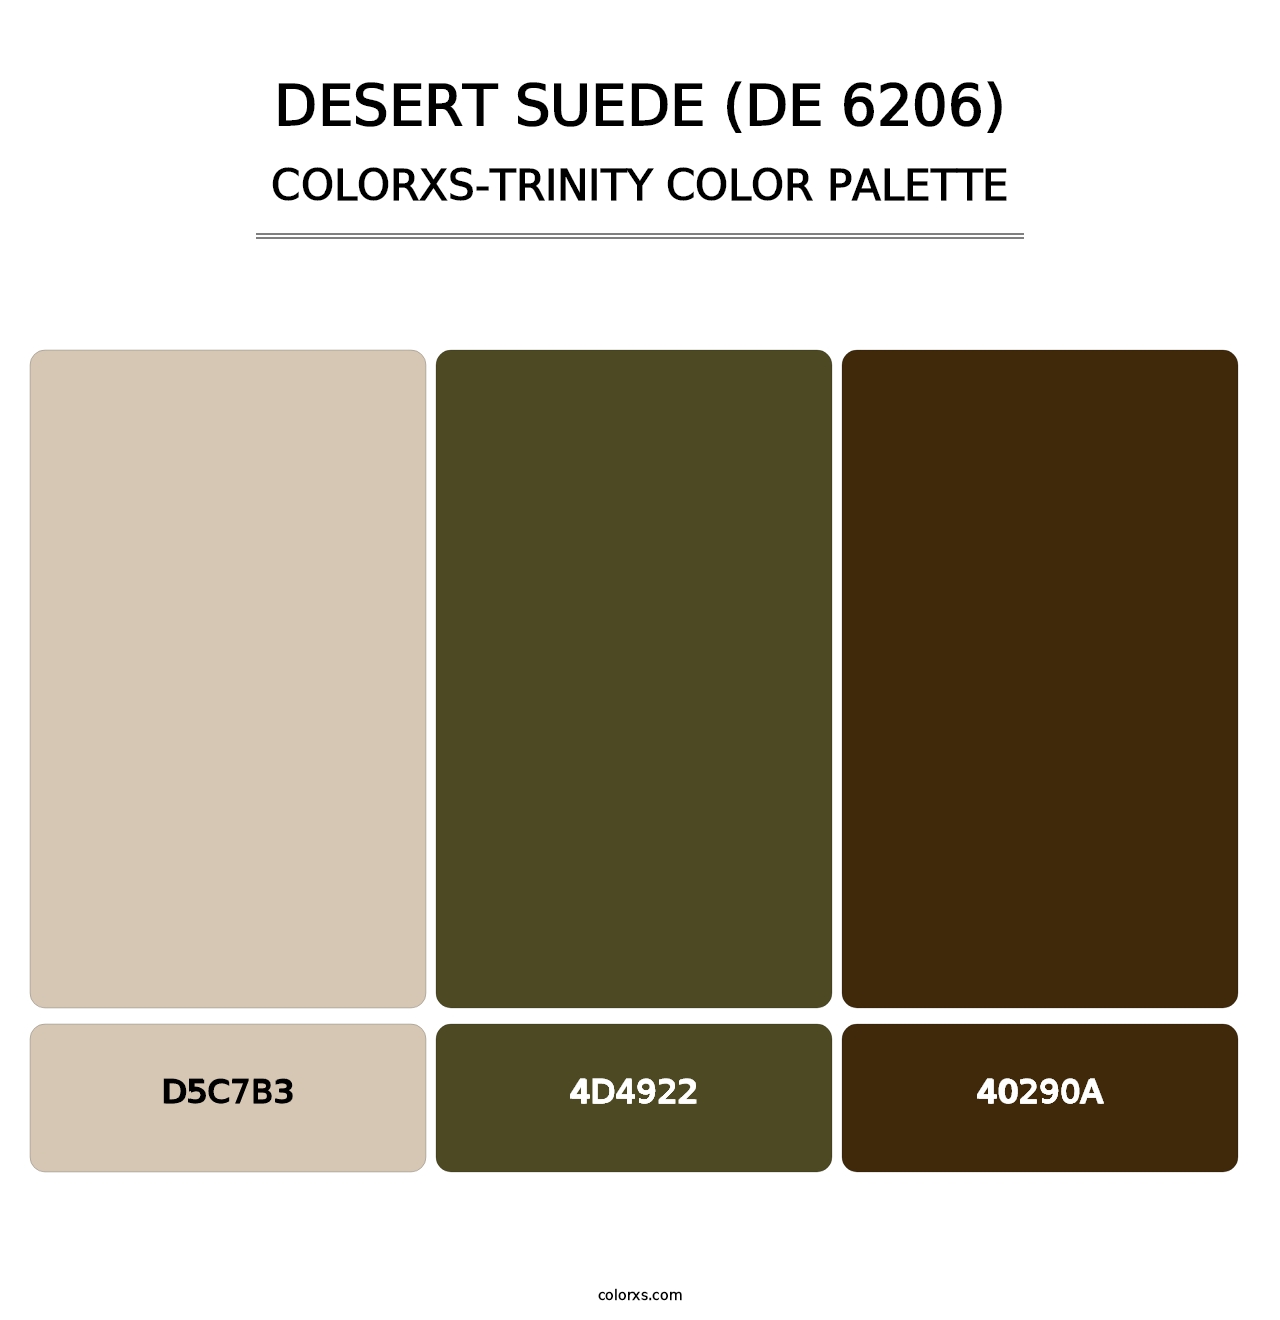 Desert Suede (DE 6206) - Colorxs Trinity Palette